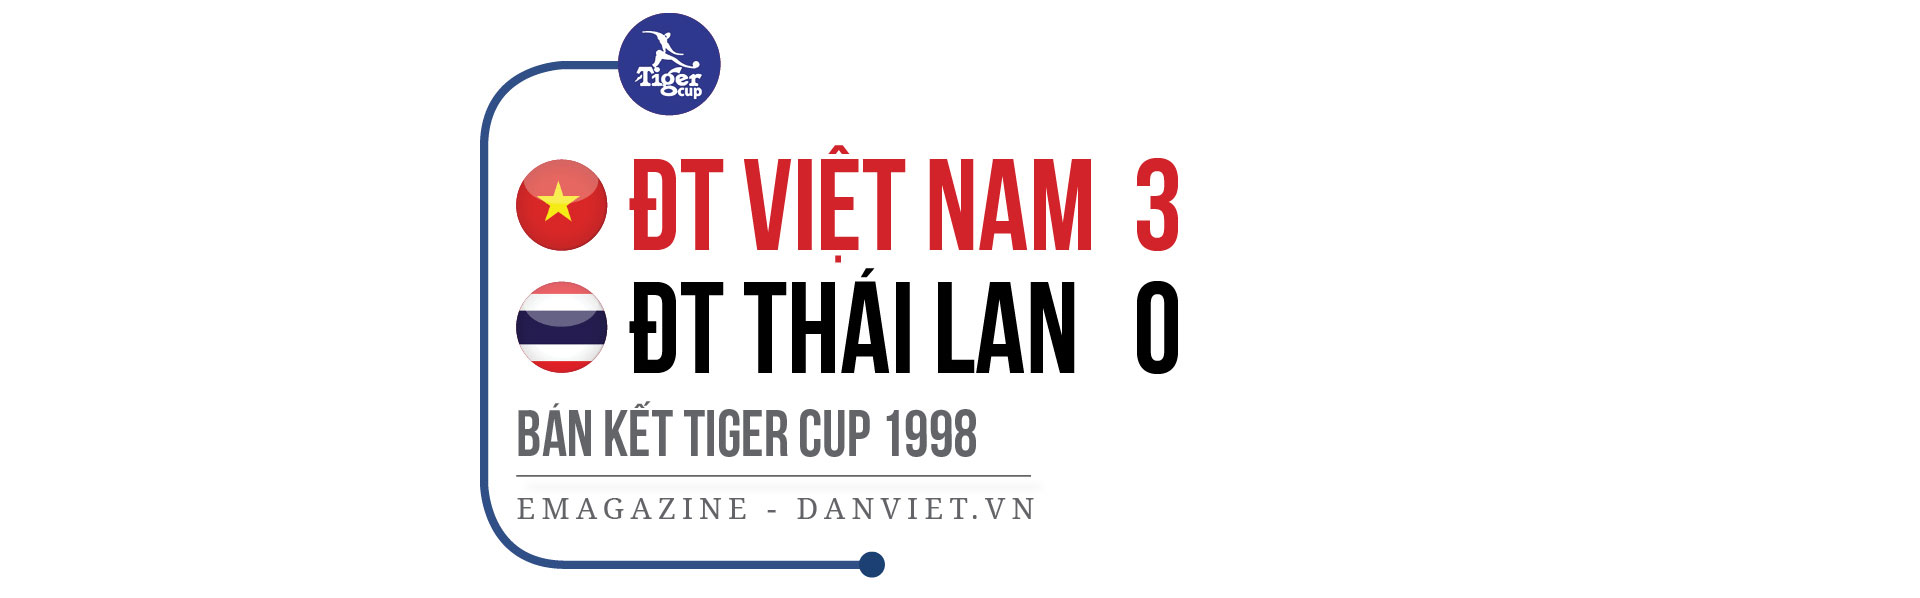 3 khoảnh khắc vàng của ĐT Việt Nam trong lịch sử AFF Cup - Ảnh 1.